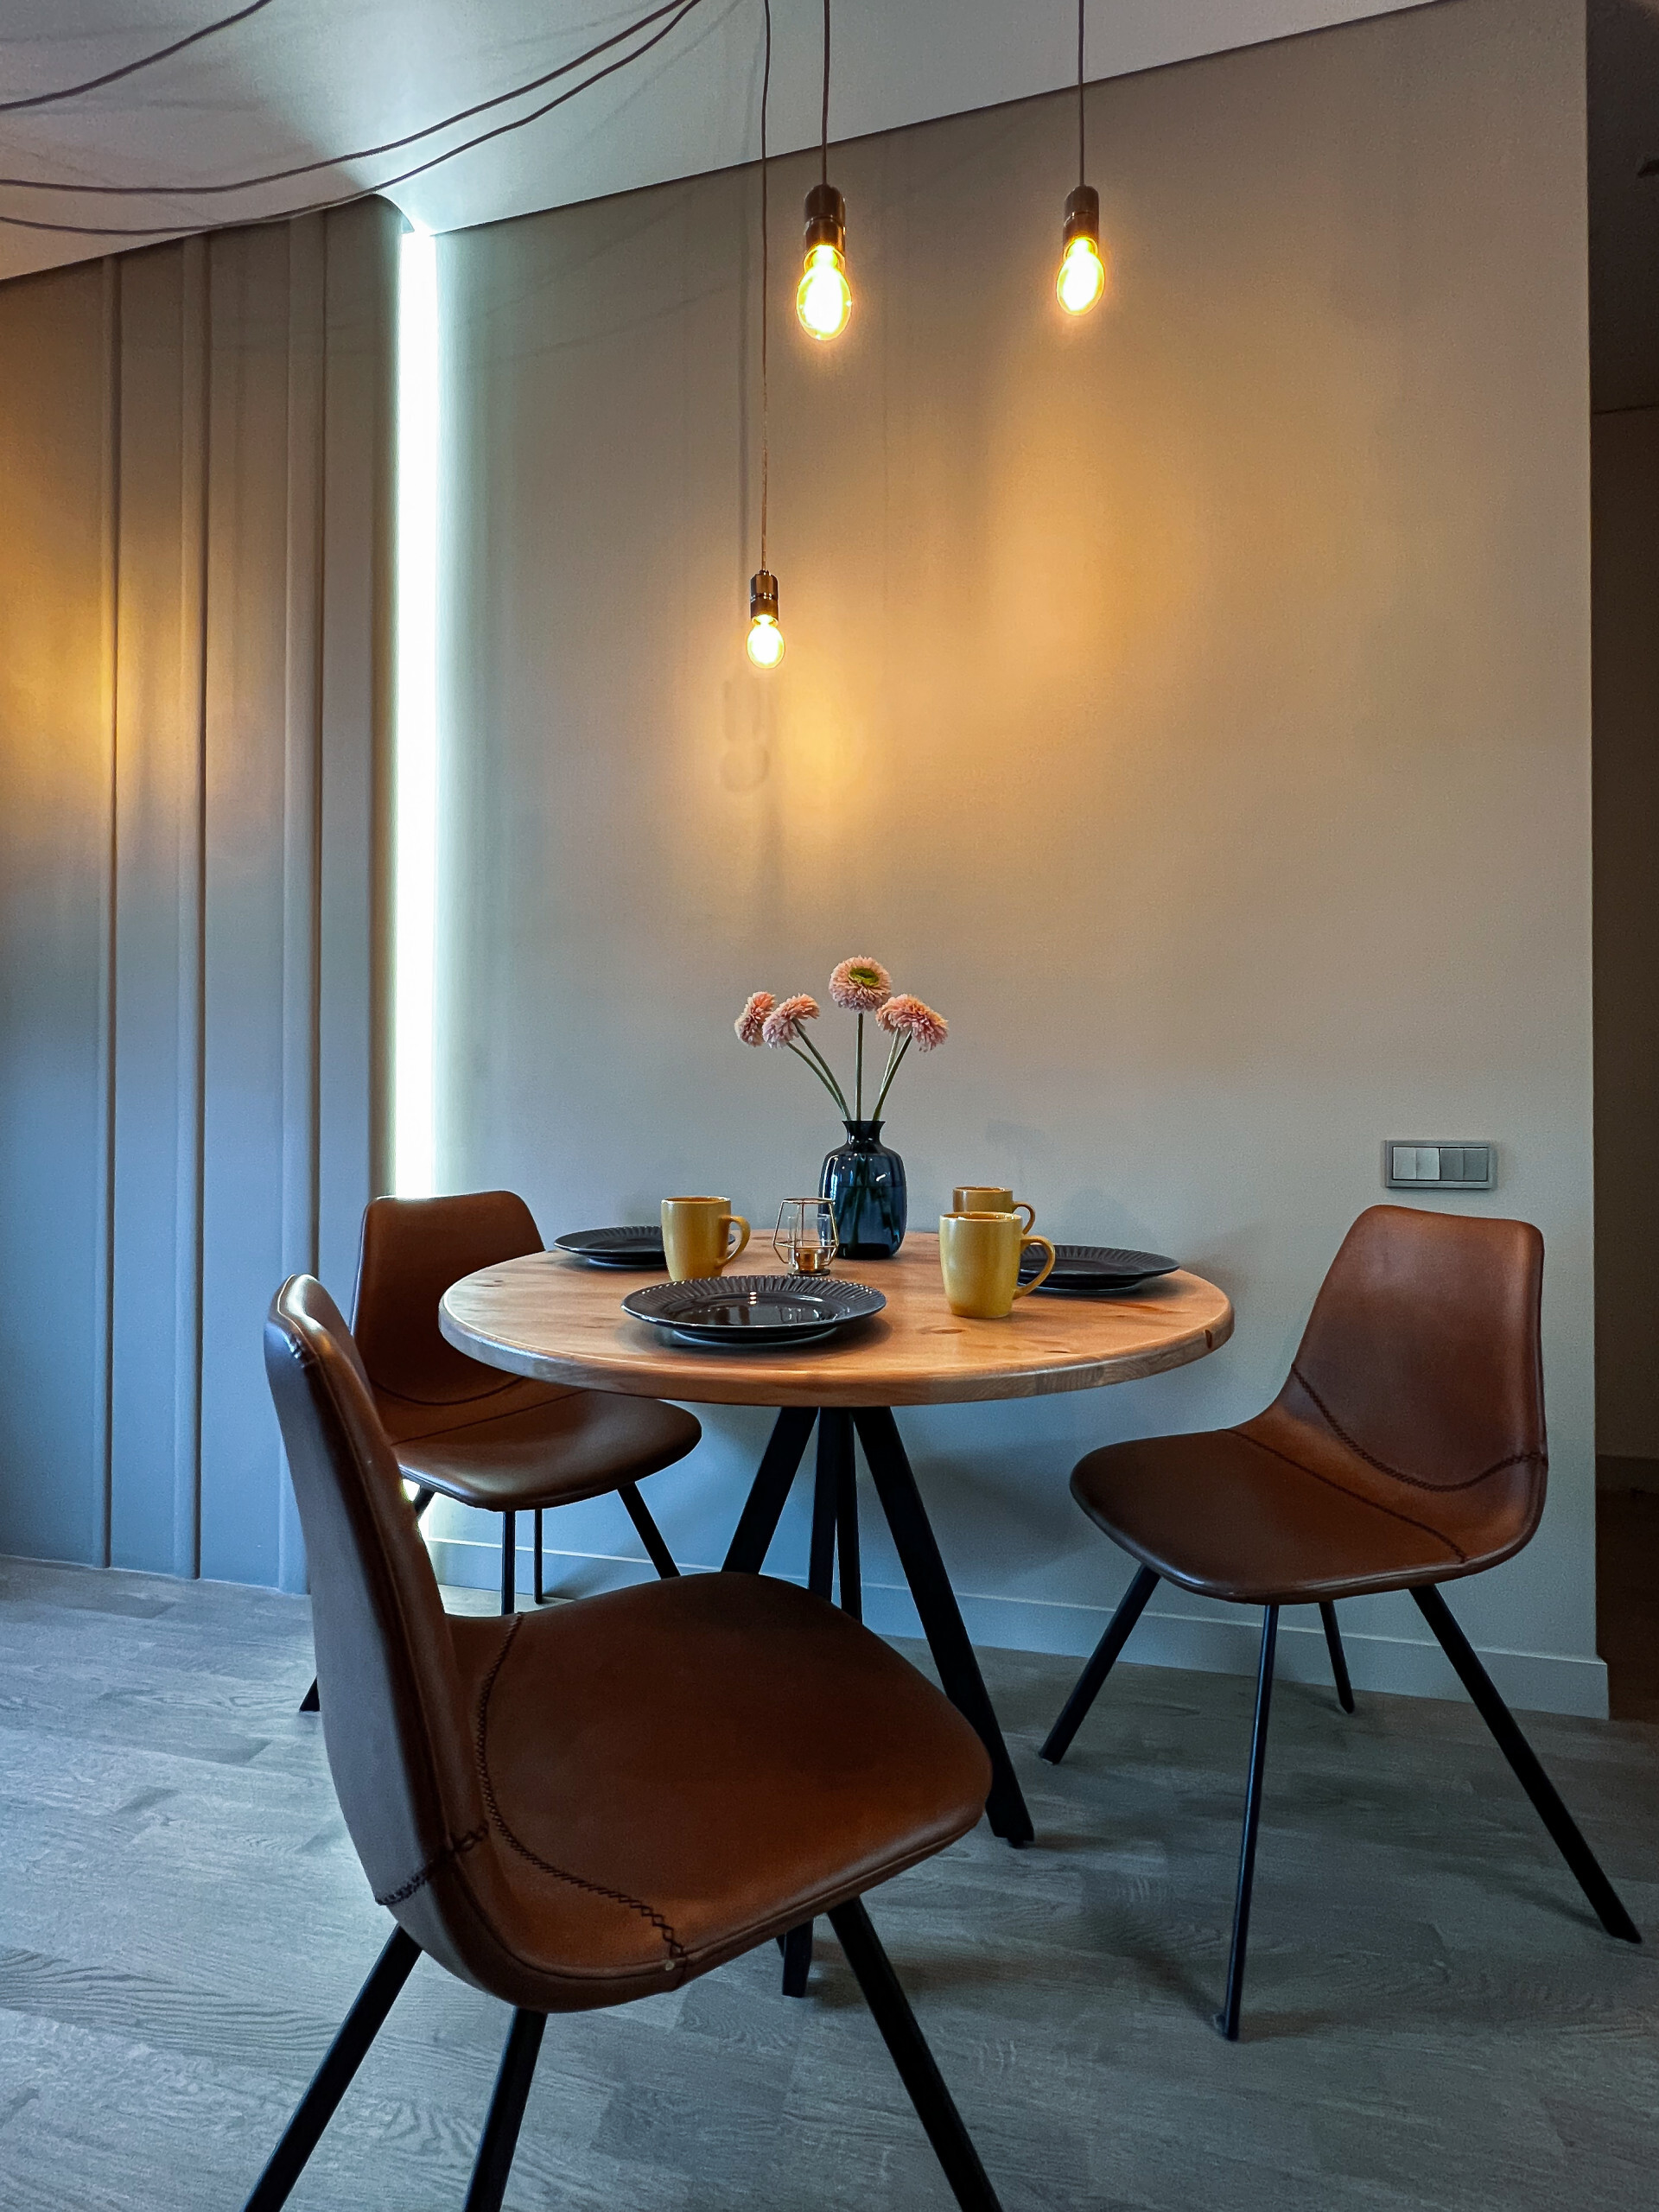 Интерьер кухни cветильниками над столом, подсветкой настенной и подсветкой светодиодной в стиле лофт